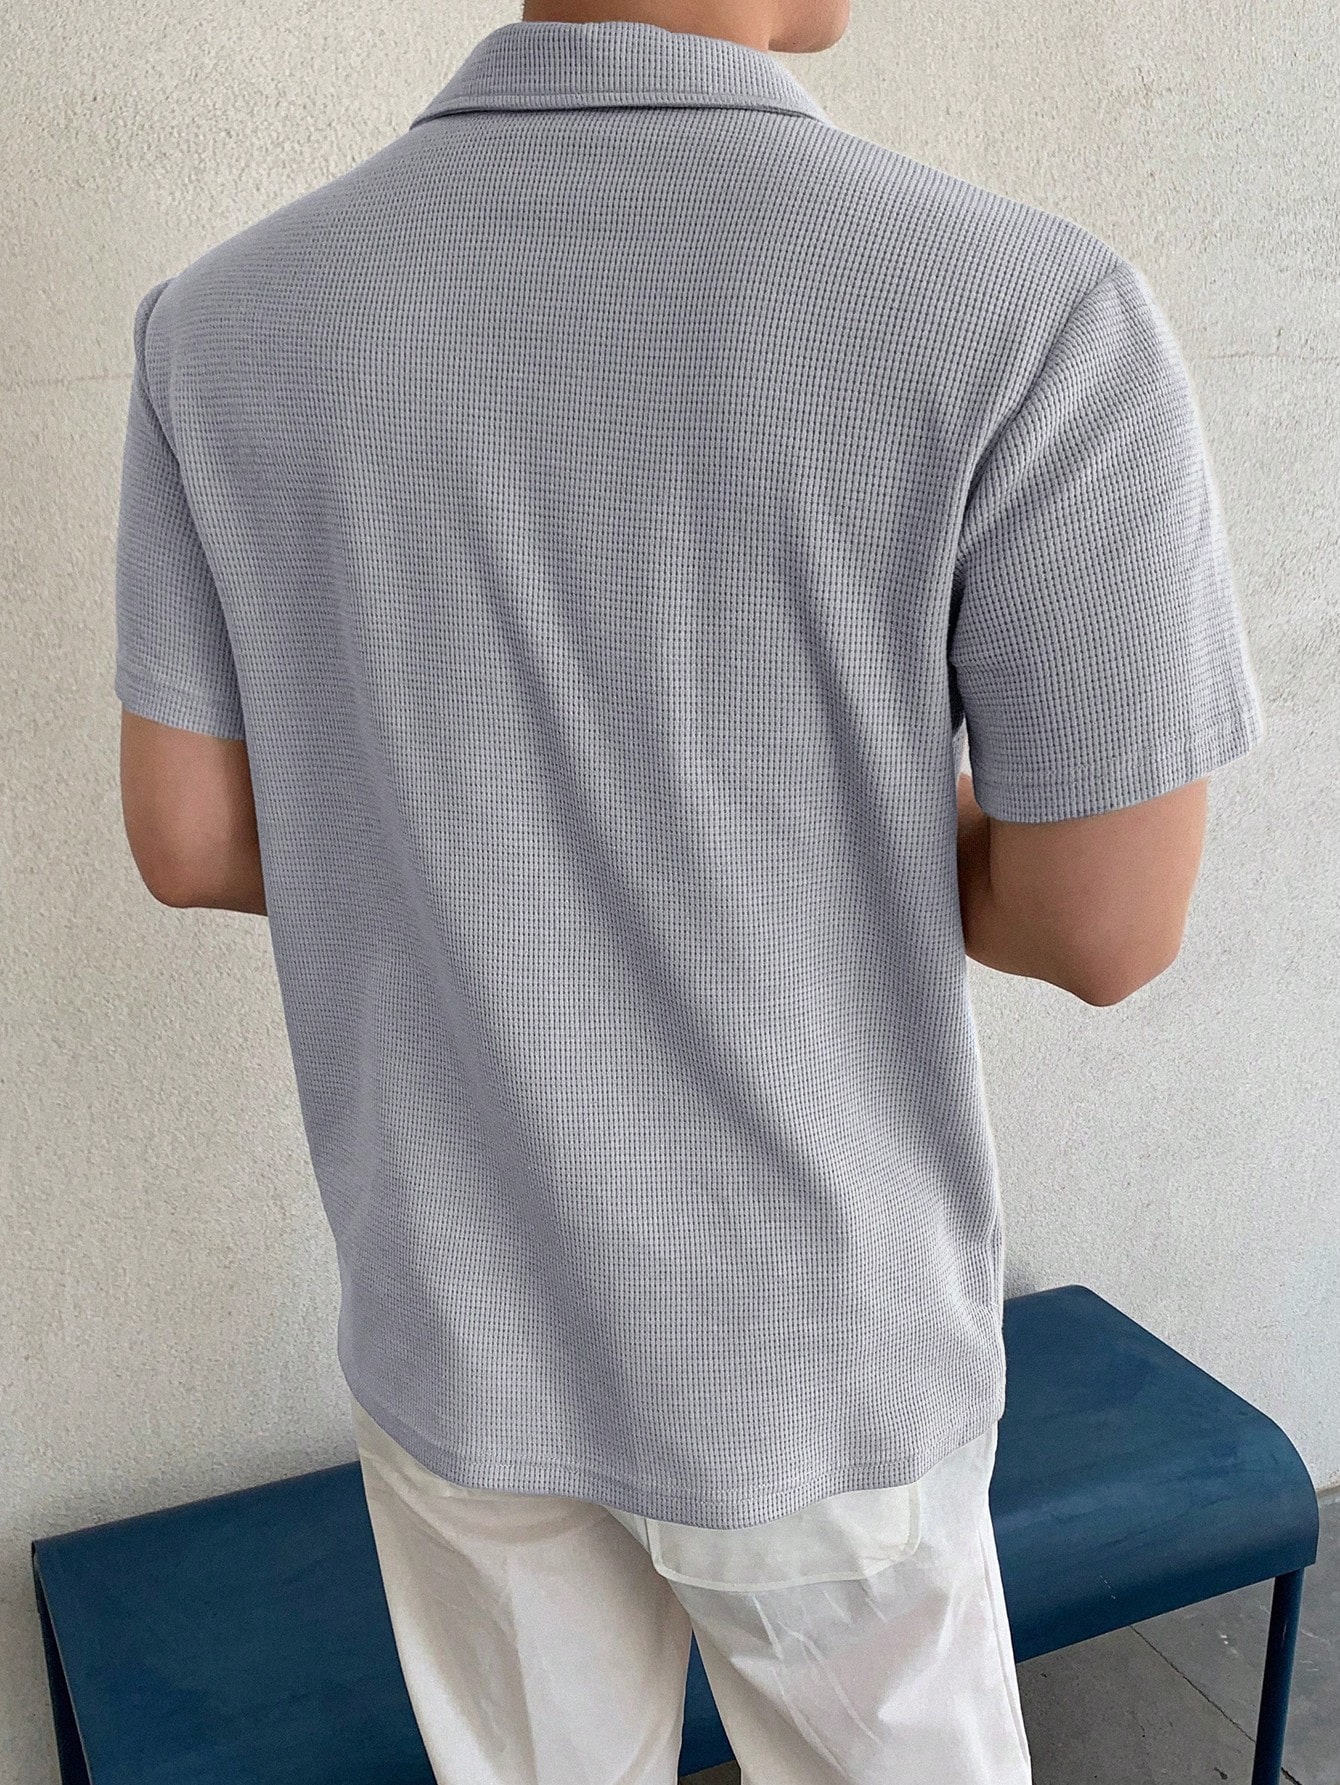 DAZY Мужская однотонная рубашка поло с коротким рукавом на лето, светло-серый dazy мужская летняя рубашка с коротким рукавом и принтом пейсли многоцветный